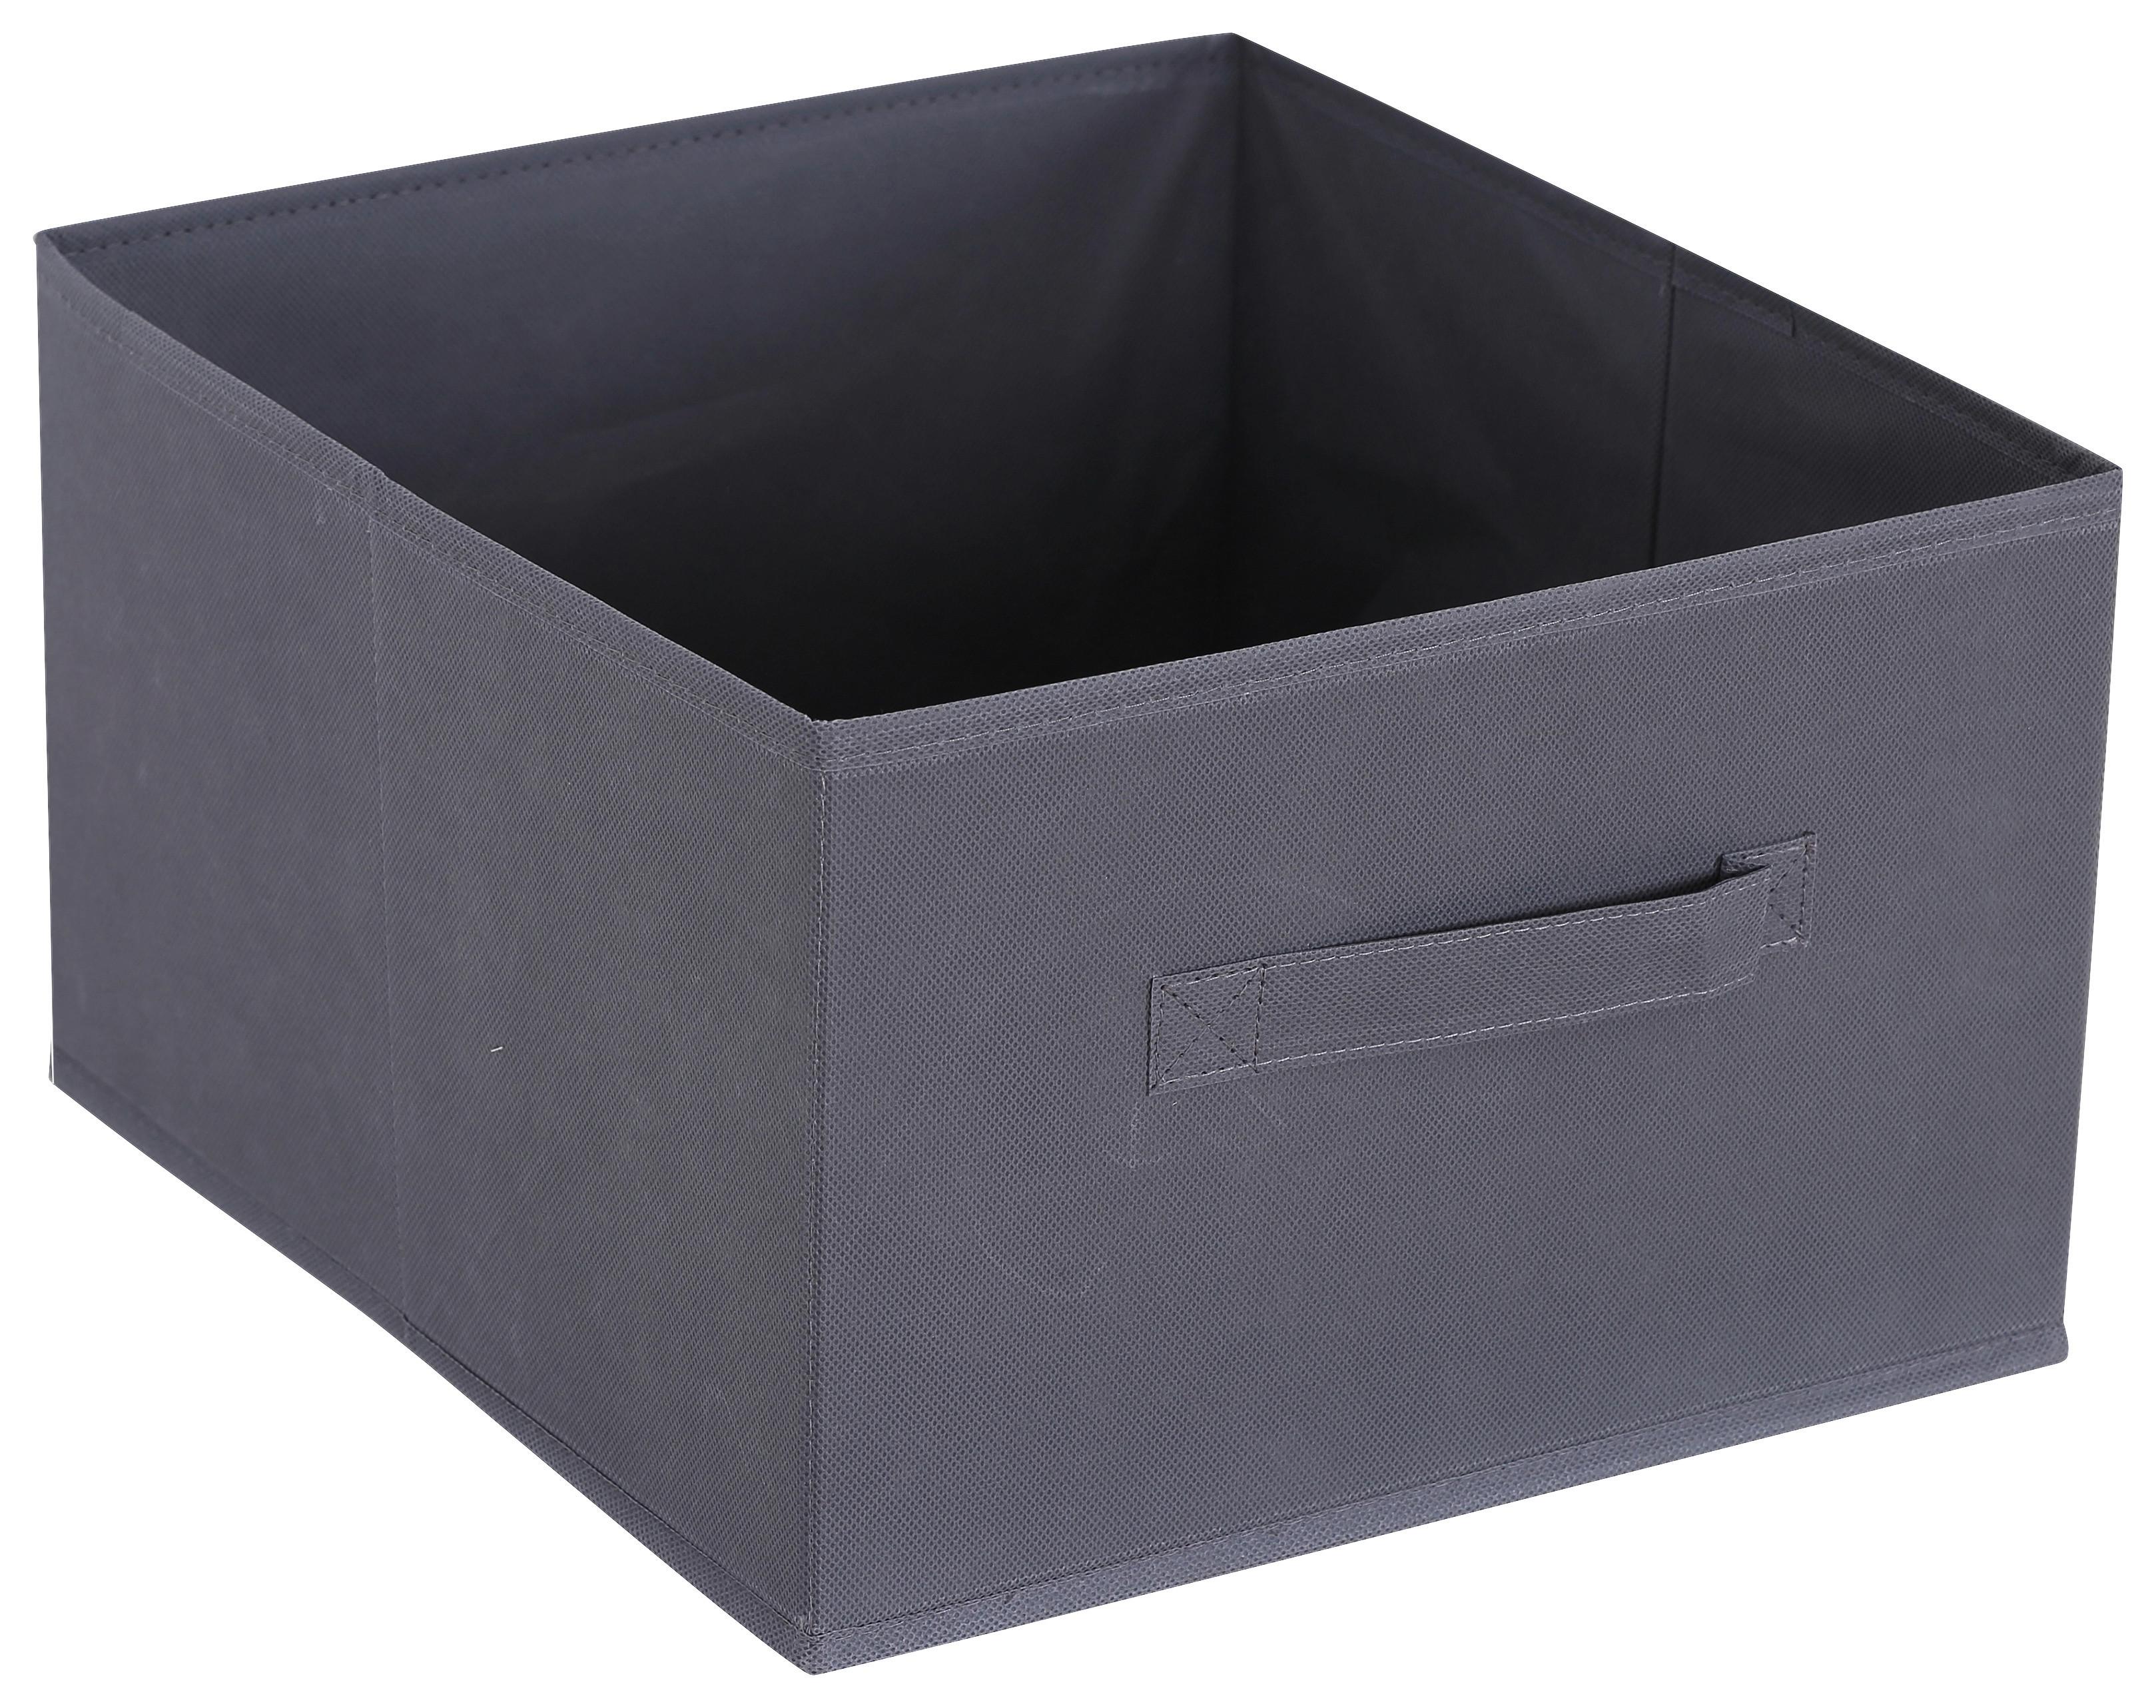 Aufbewahrungsbox Kläck in Grau - Grau, Karton/Textil (33,5/20/31cm) - Modern Living